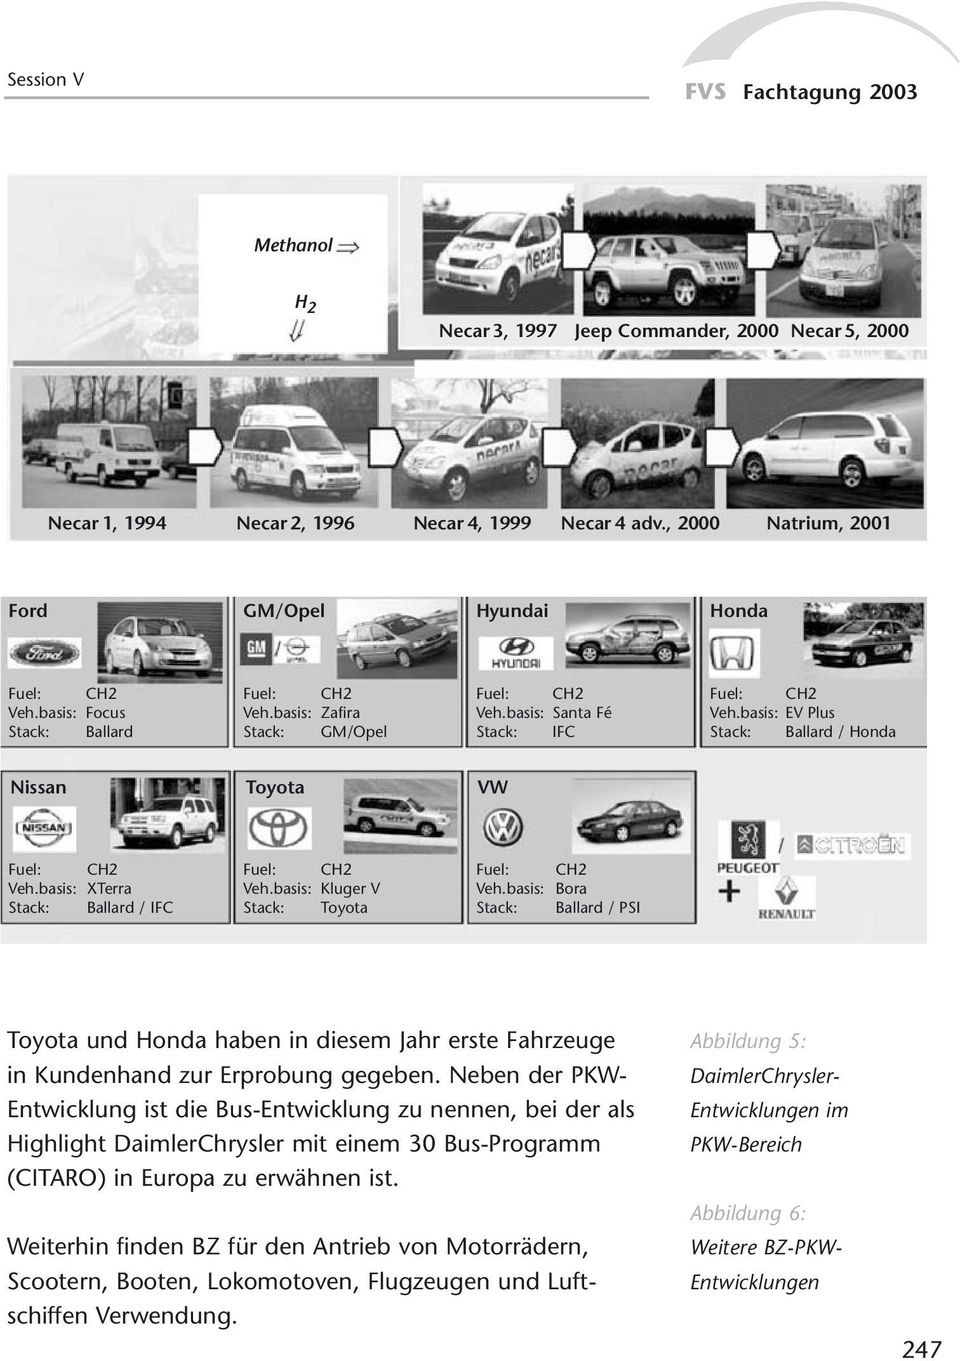 basis: Kluger V Stack: Toyota Fuel: Veh.basis: Stack: CH2 Bora Ballard / PSI Toyota und Honda haben in diesem Jahr erste Fahrzeuge in Kundenhand zur Erprobung gegeben.